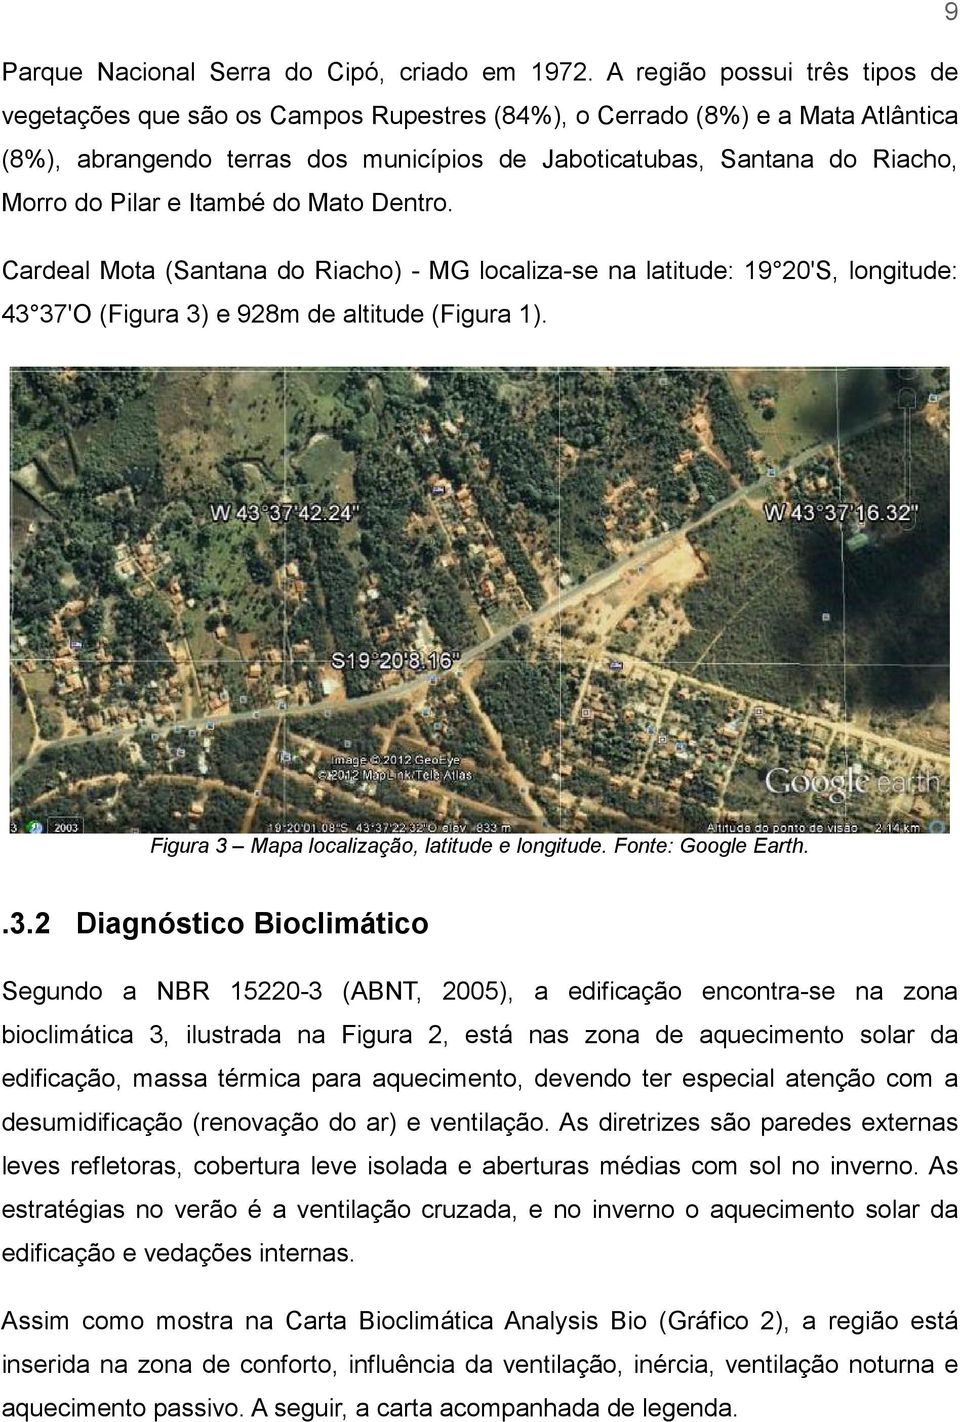 Pilar e Itambé do Mato Dentro. Cardeal Mota (Santana do Riacho) - MG localiza-se na latitude: 19 20'S, longitude: 43 37'O (Figura 3) e 928m de altitude (Figura 1).